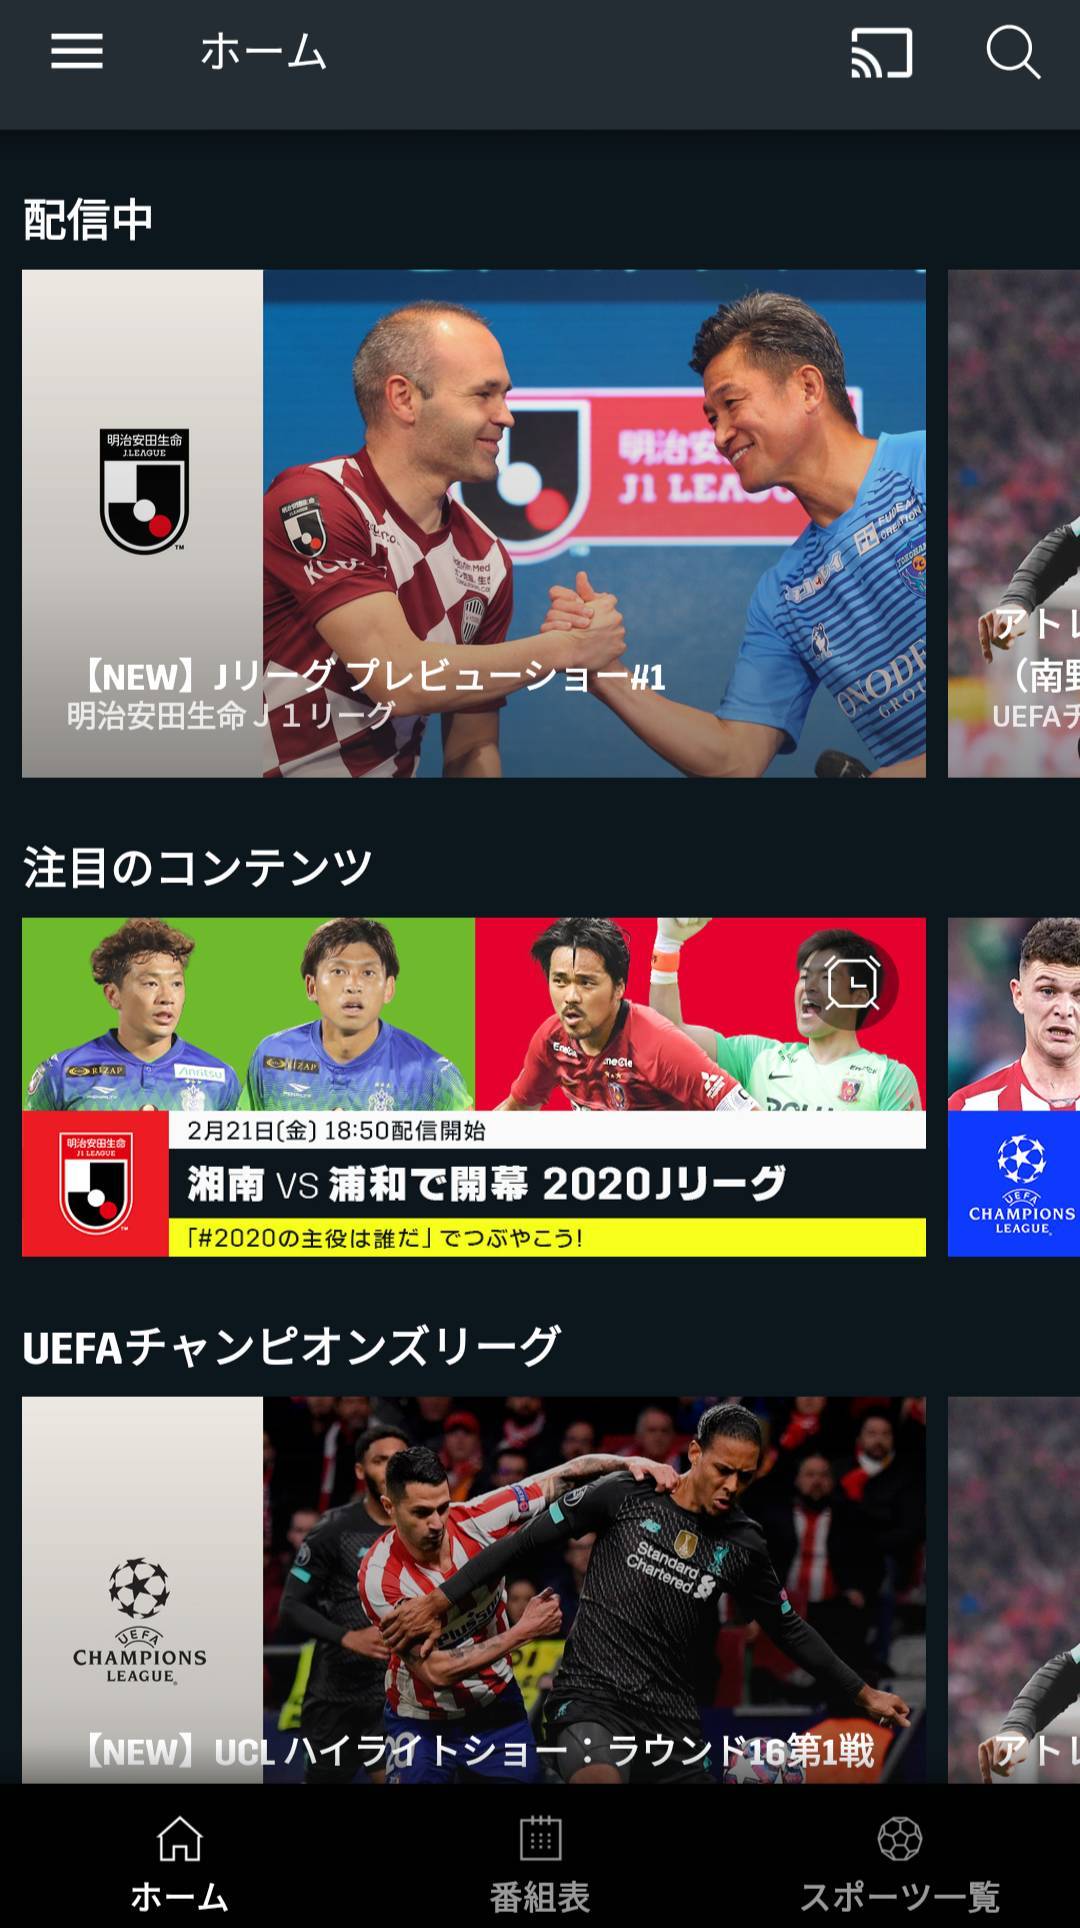 国内サッカー Jリーグのネット中継をスマホで観る方法6つ 無料あり の画像 1枚目 Appliv Topics